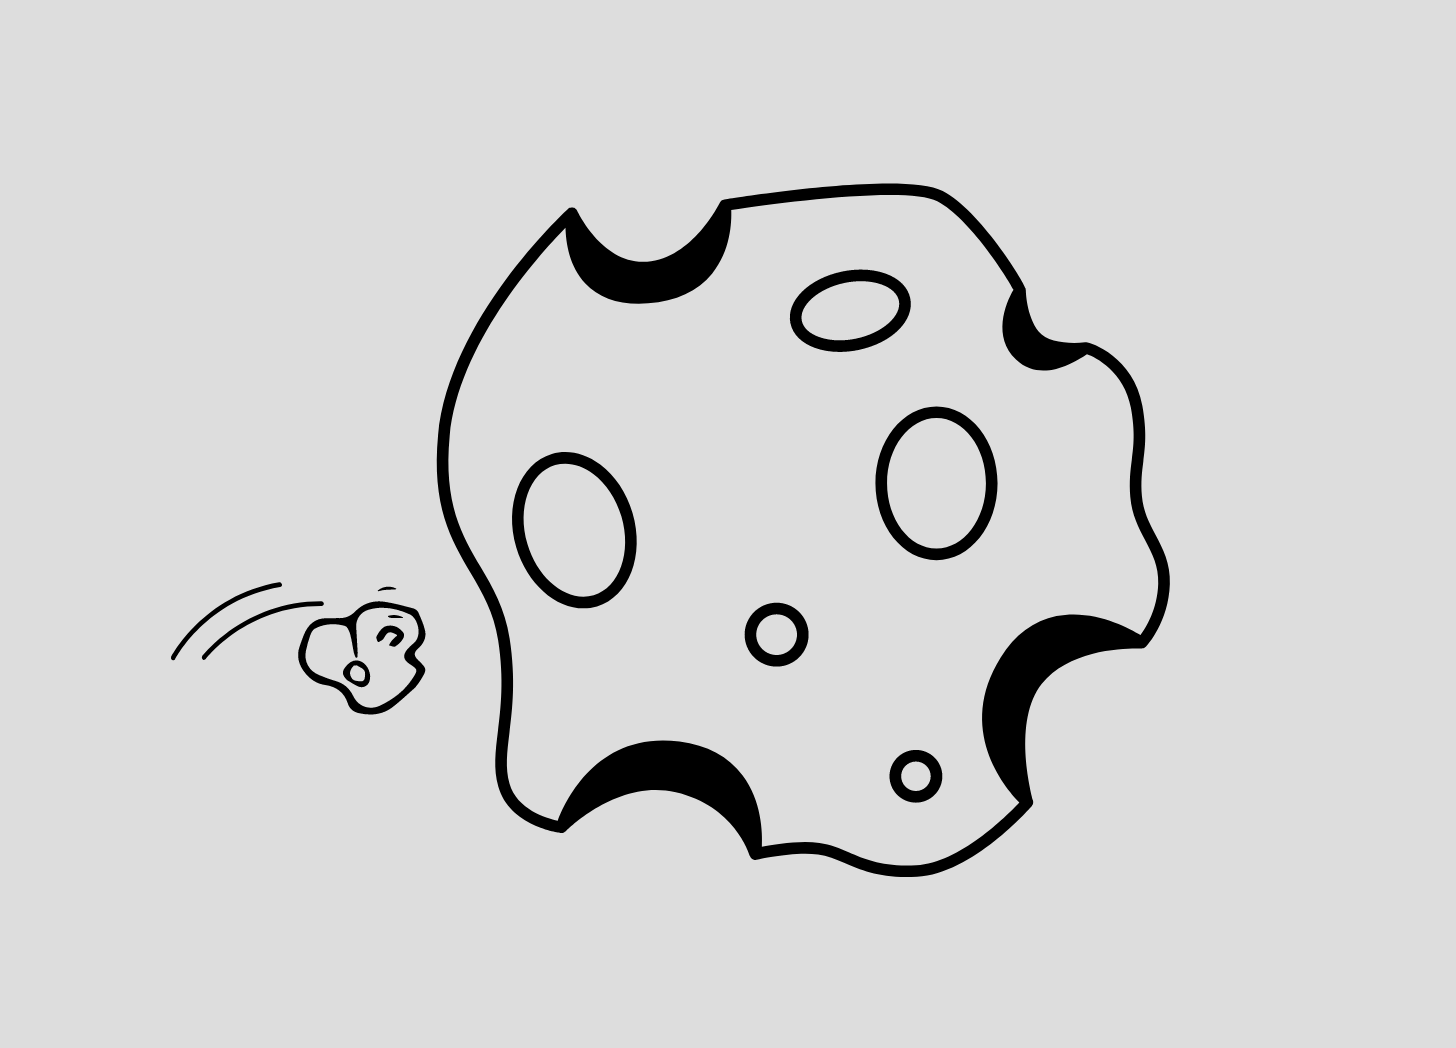 Desenho com contorno em preto e branco em fundo cinza de uma pequena pedra prestes a colidir com um grande asteroide cheio de crateras.